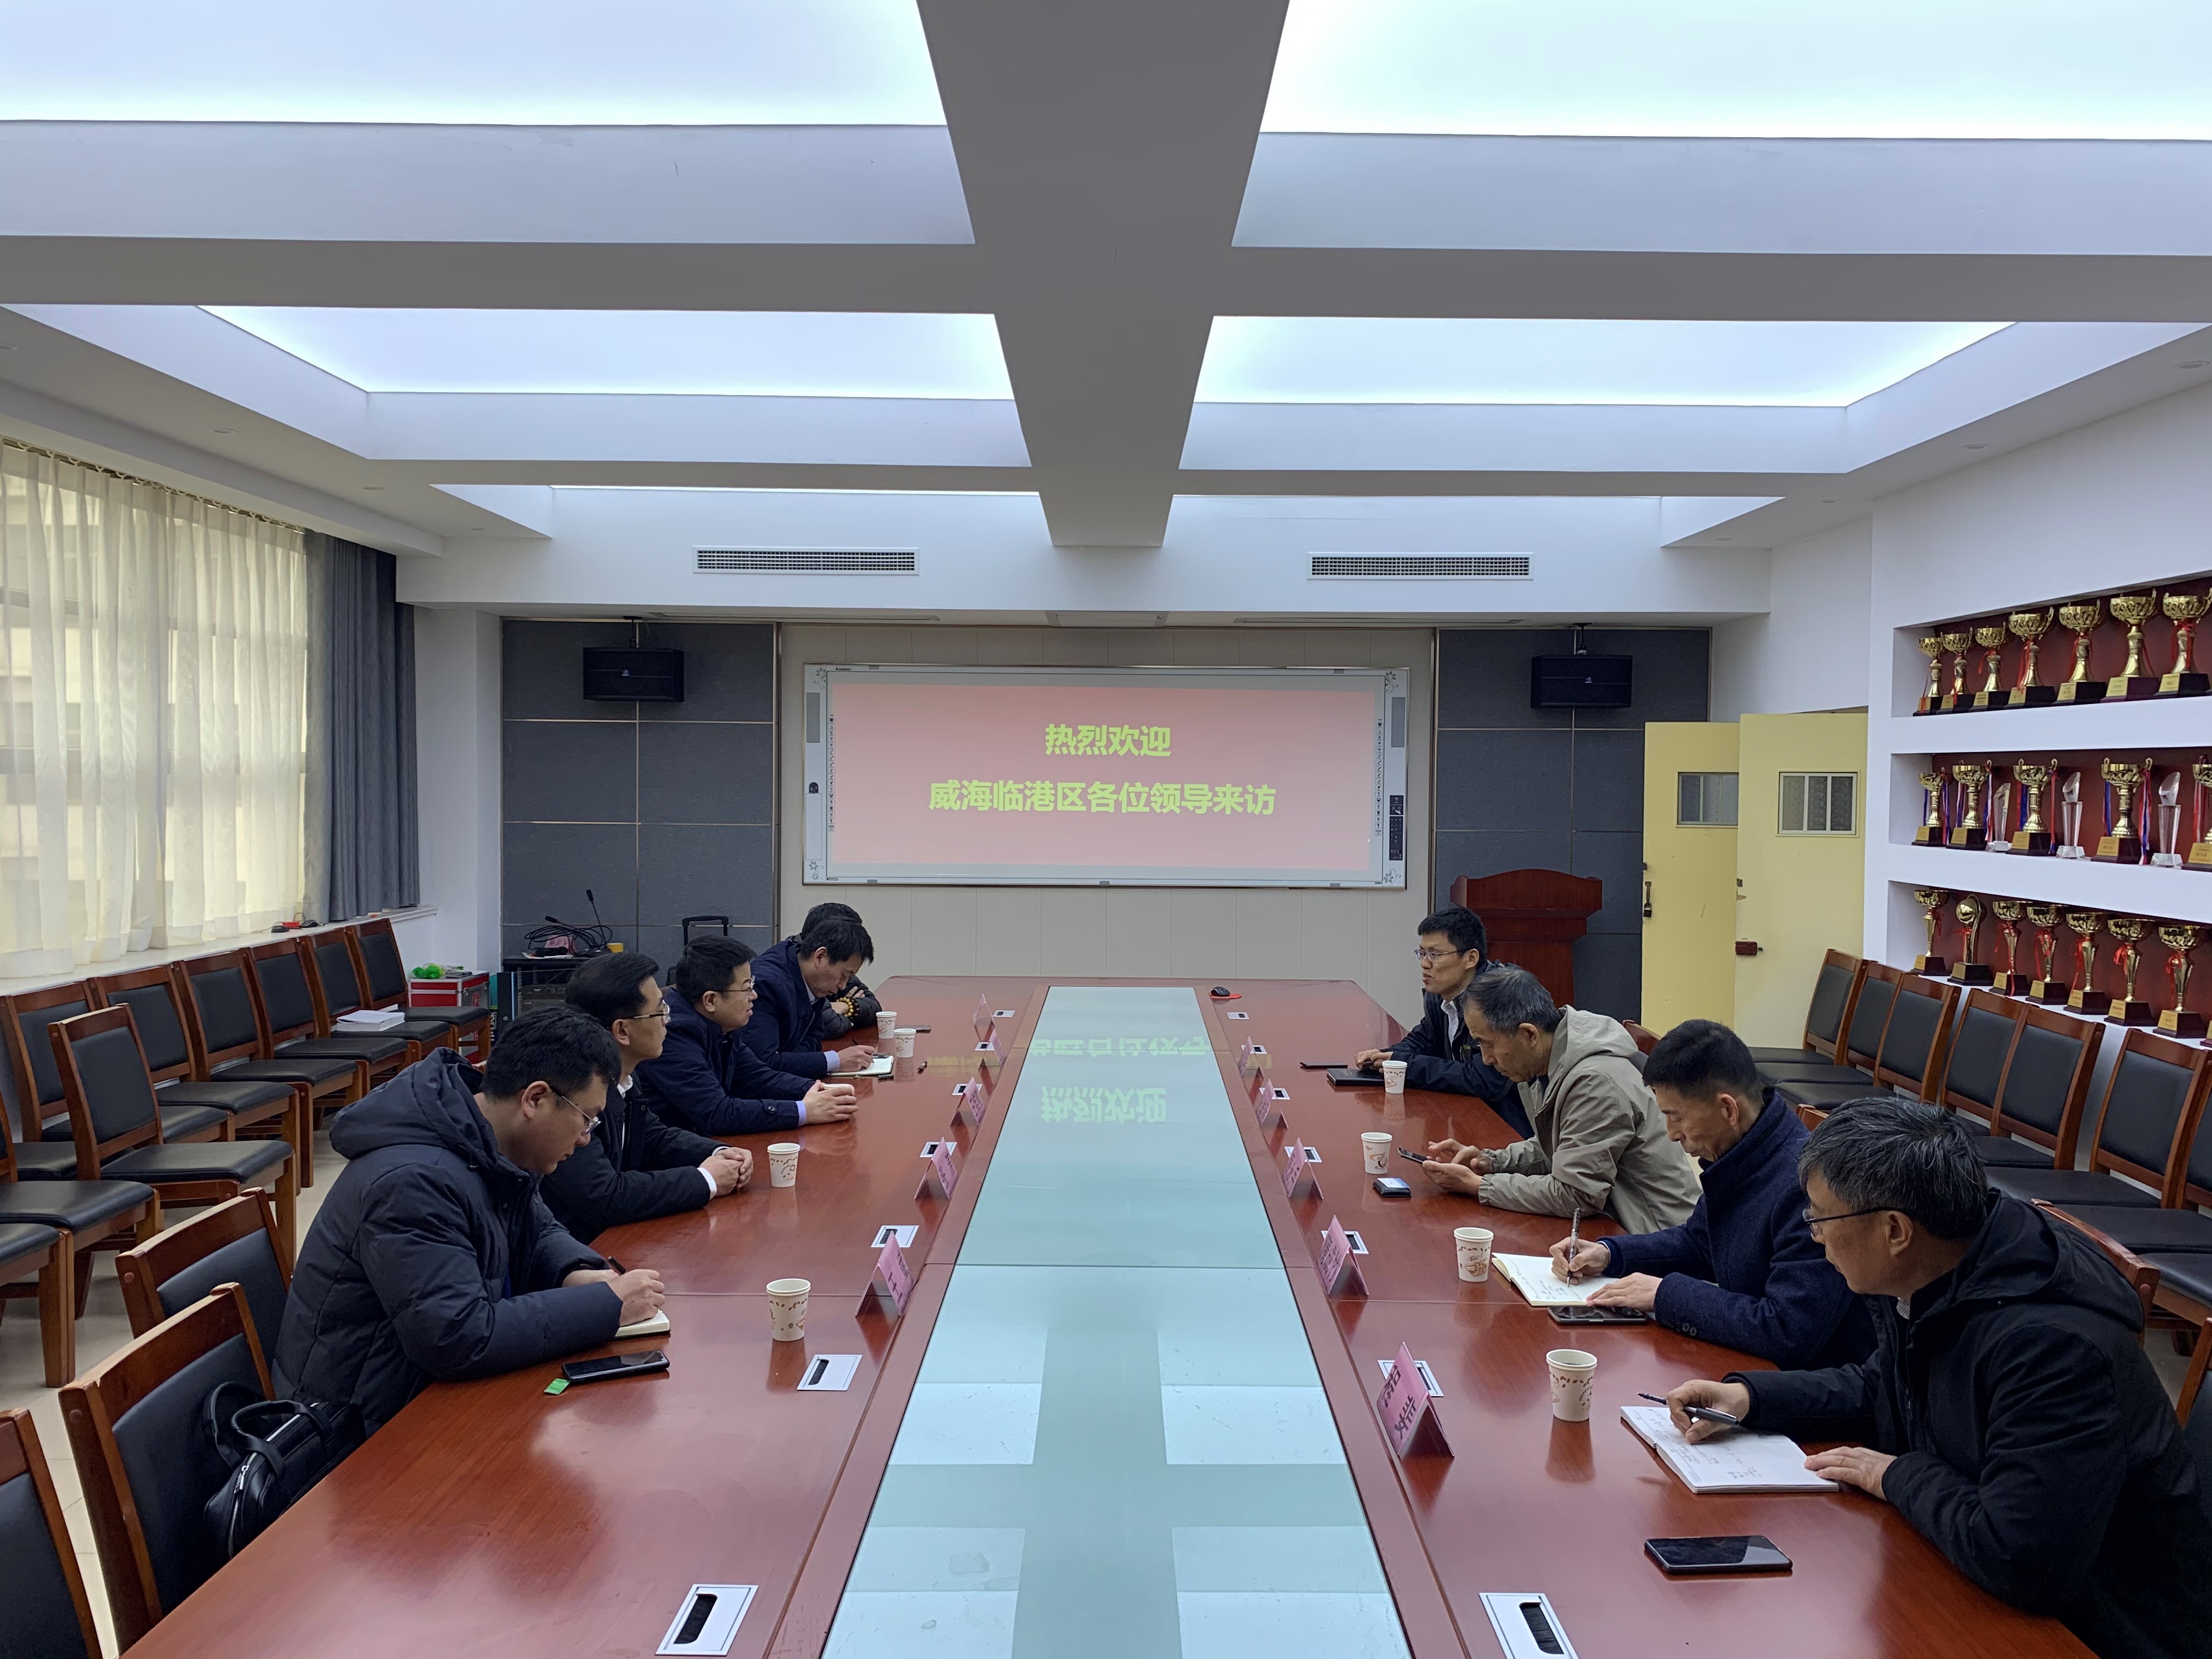 中国音乐学院附属北京实验学校举办市区联动教学视导活动